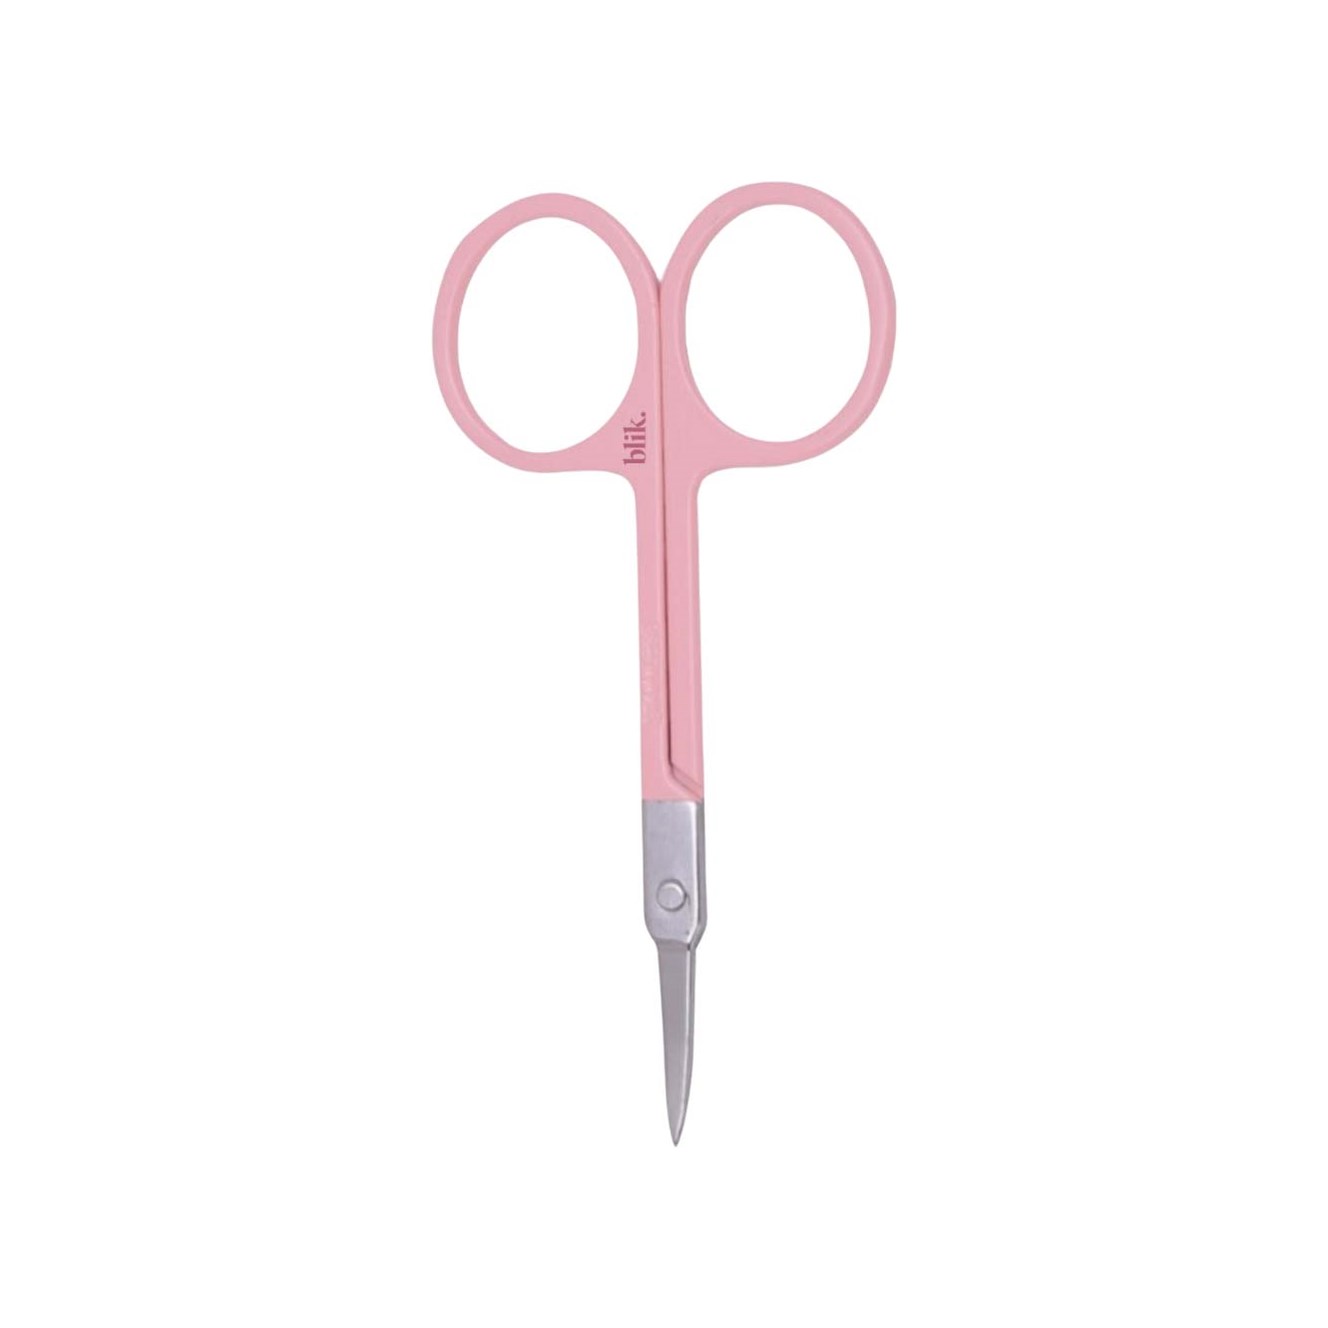 Bilde av Blik Precision Beauty Scissors